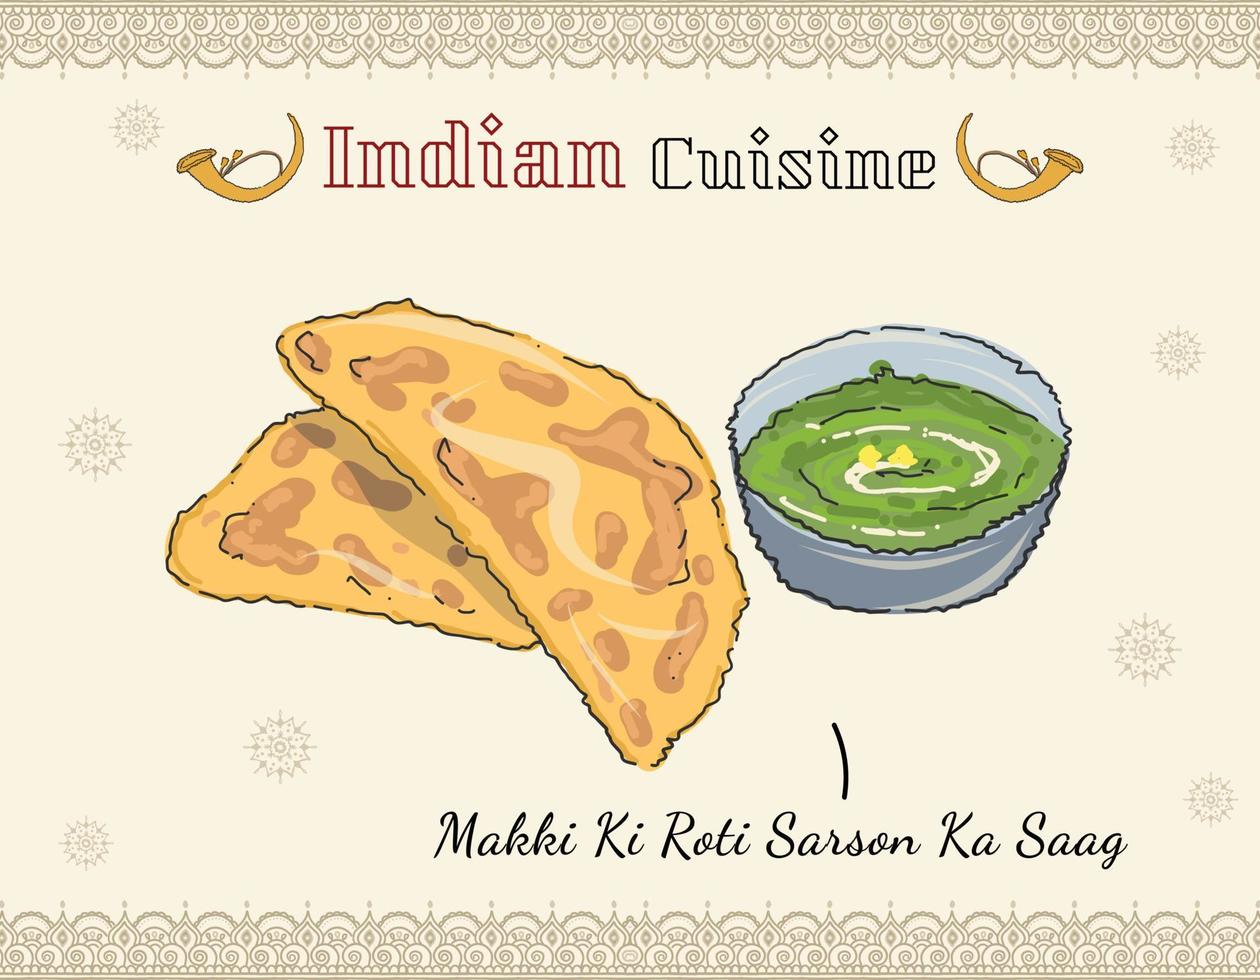 sarson ka saag. cibo indiano punjabi vettore colorato stile scarabocchiato cucina indiana, piatto. cibo tradizionale indiano